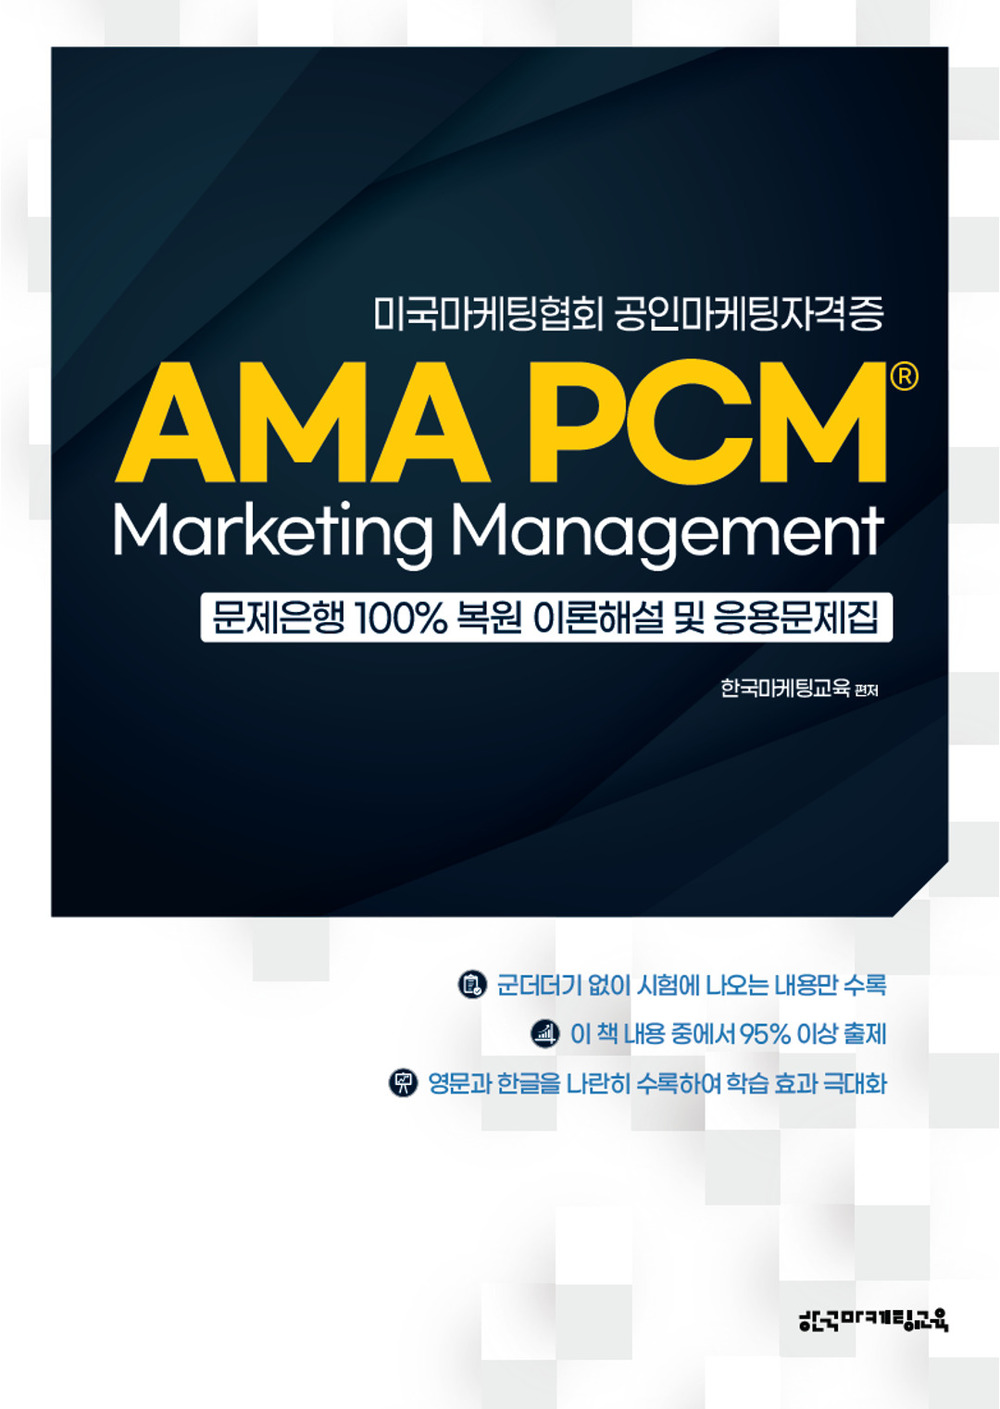 미국마케팅협회 공인마케팅자격증 AMA PCM Marketing Management 문제은행 100% 복원 이론해설 및 응용문제집